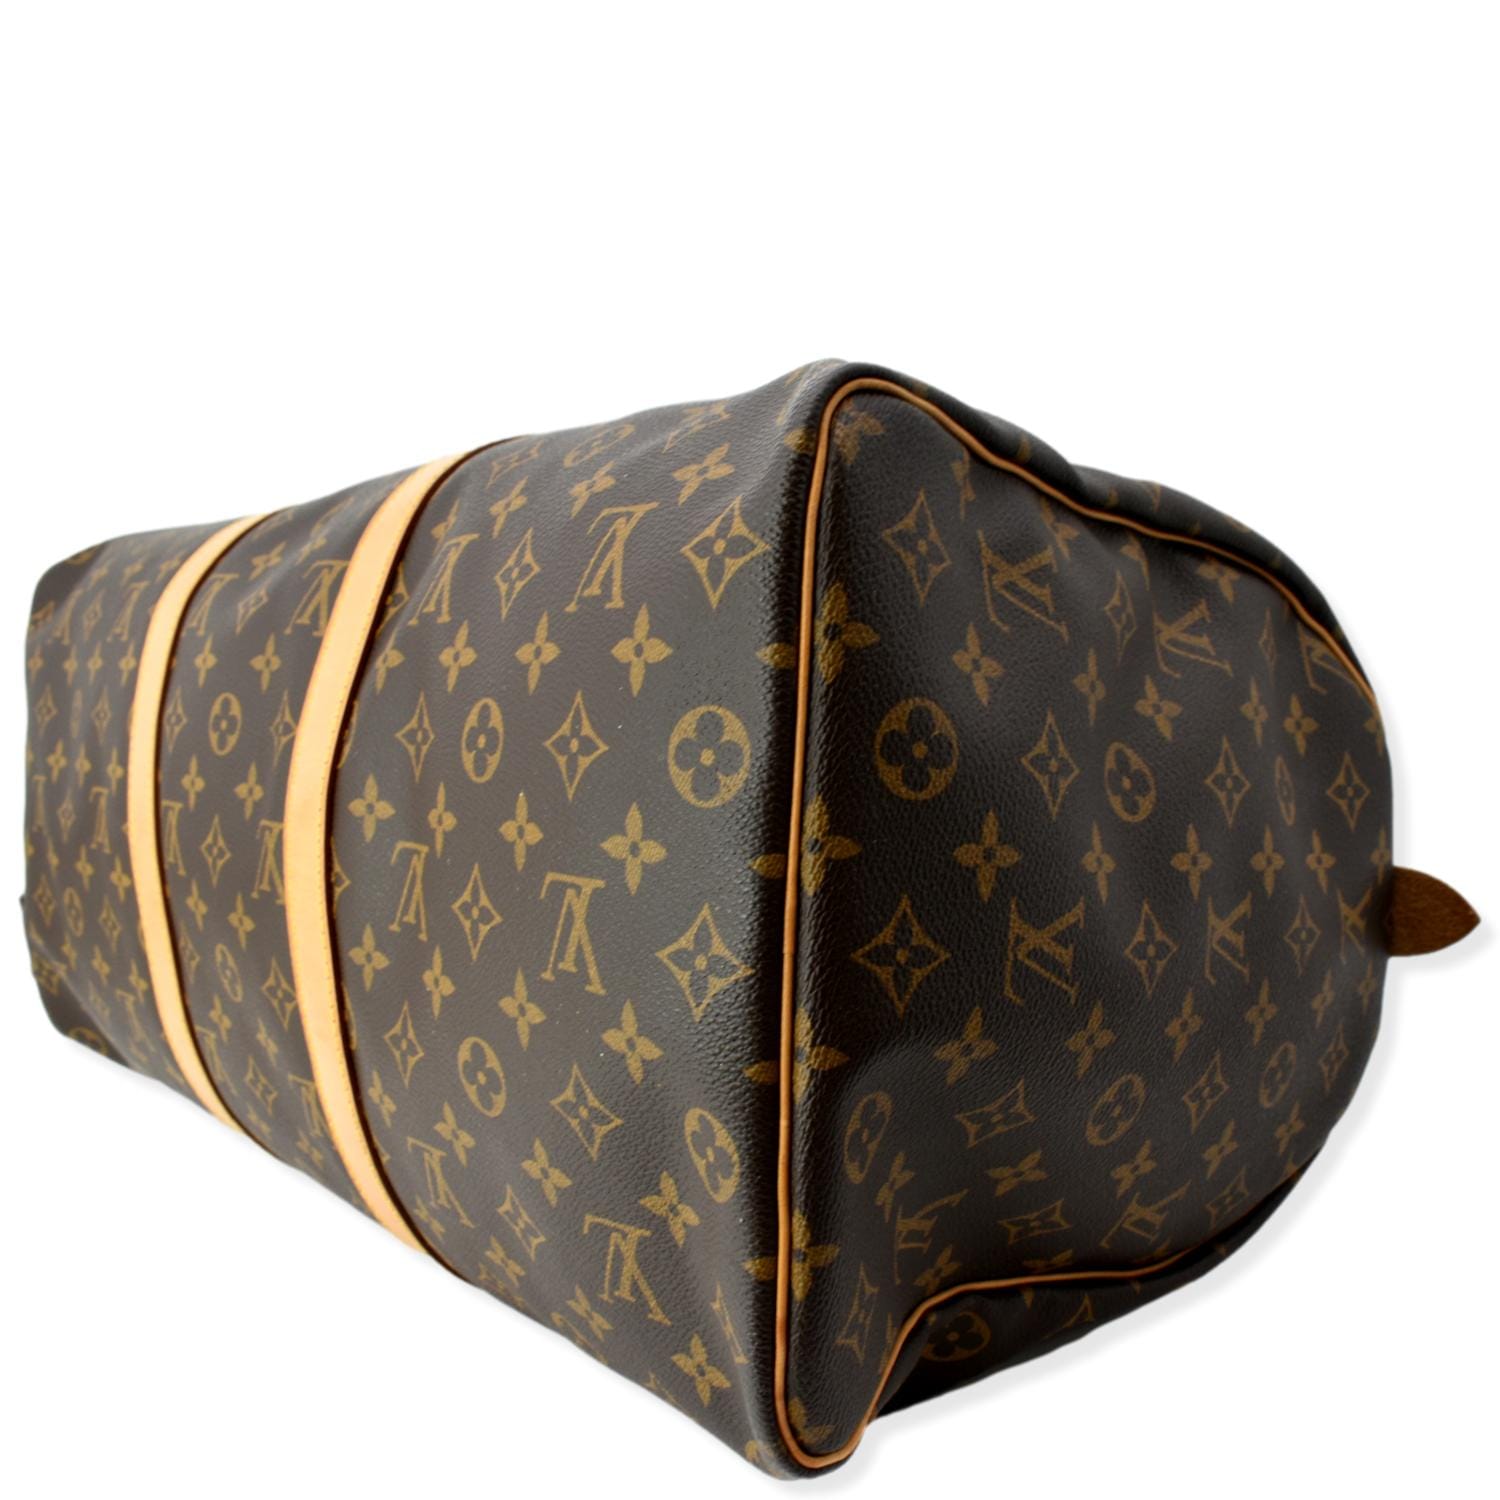 My first Designer Bag!! Louis Vuitton Keepall 50